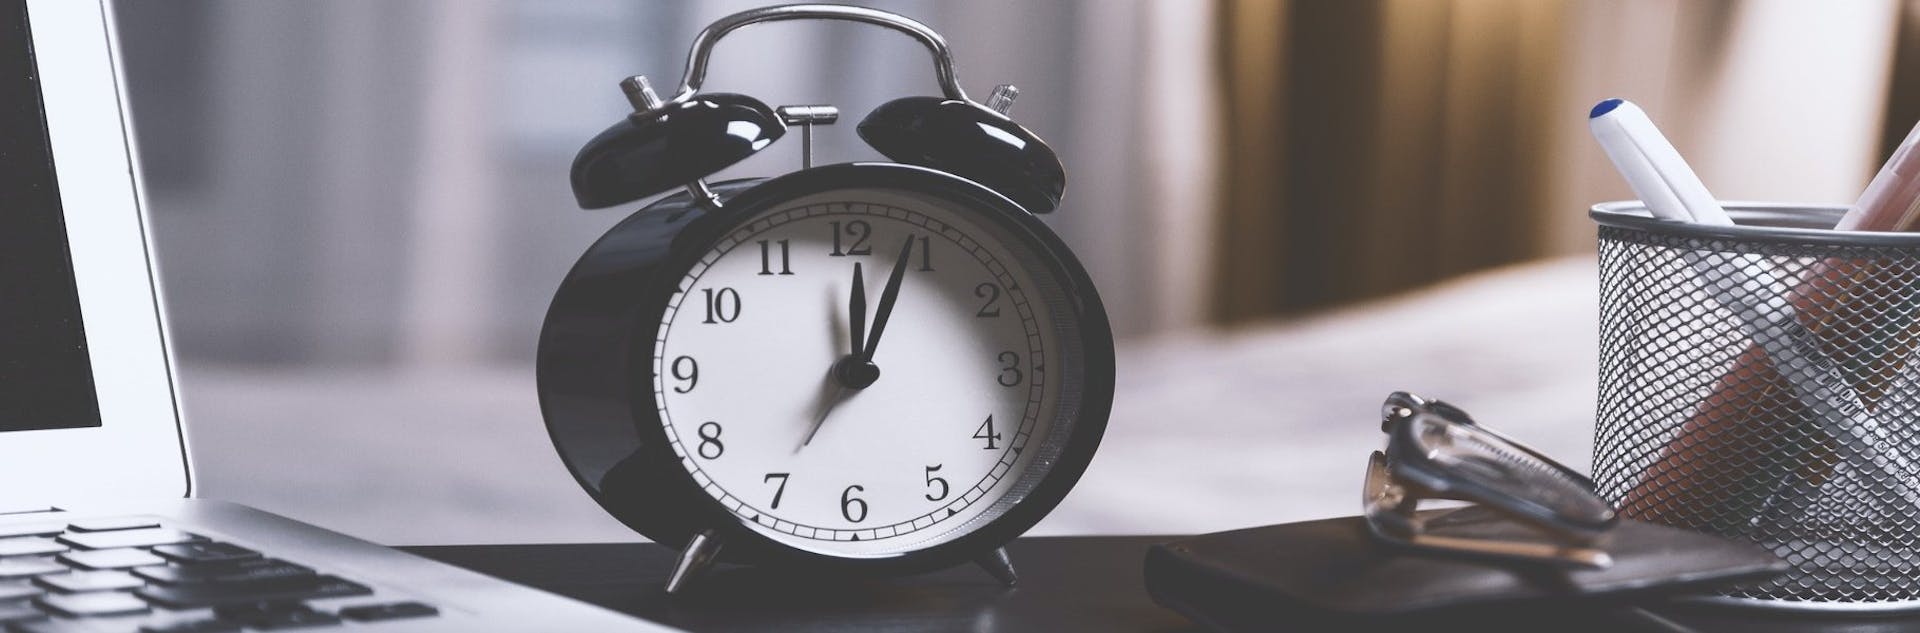 Herramientas de gestión del tiempo: exprime cada segundo del día